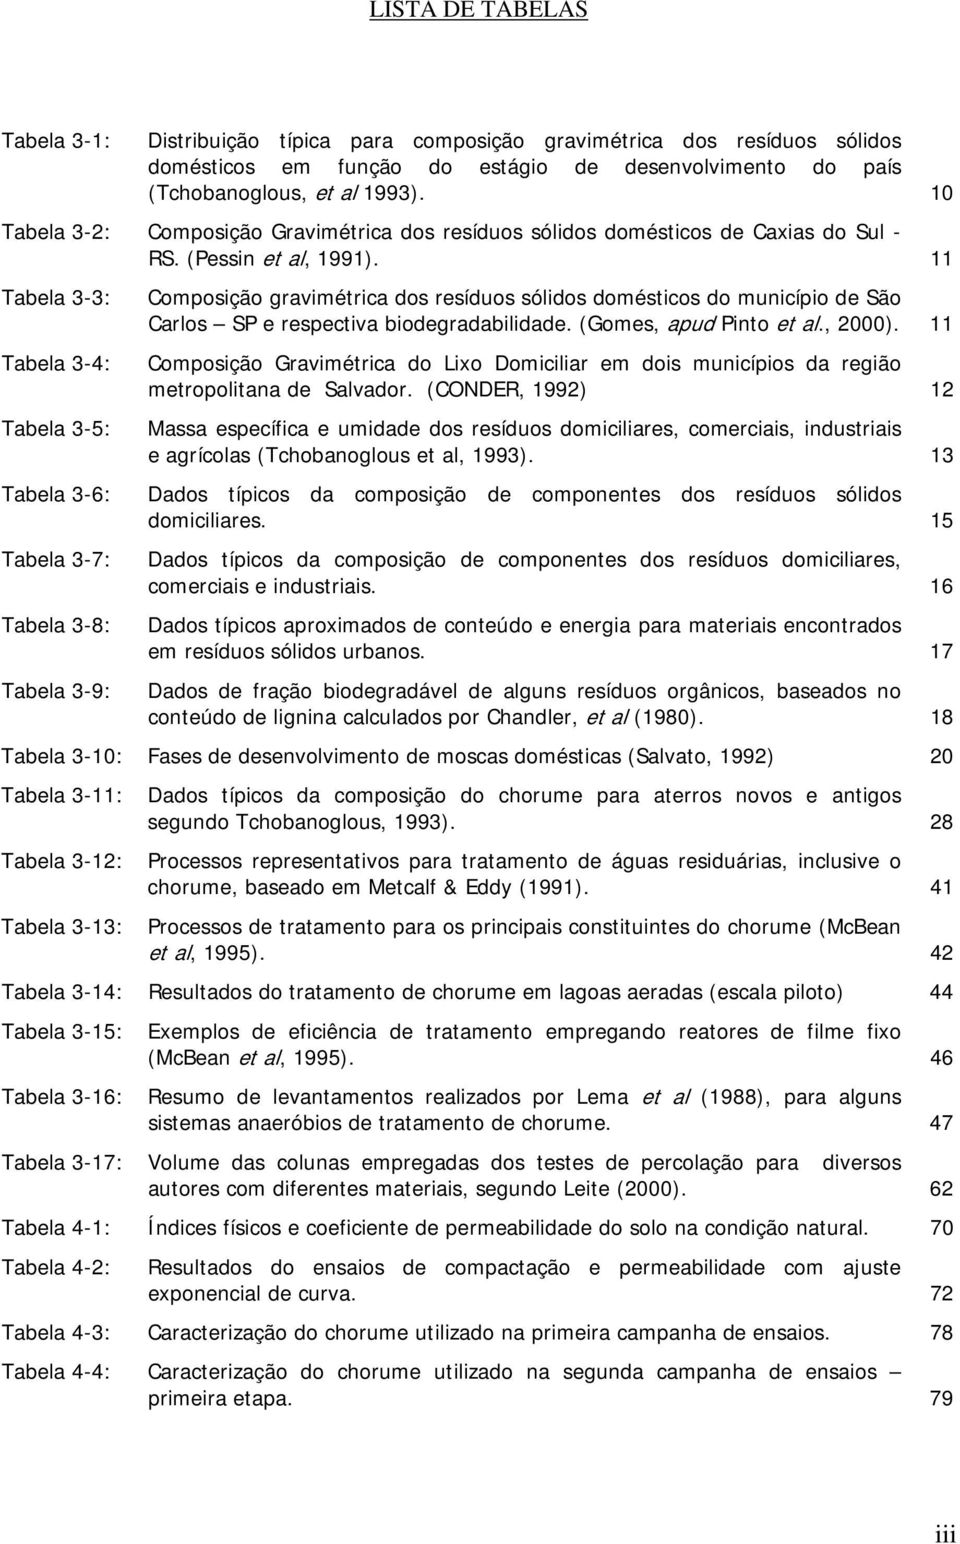 11 Tabela 3-3: Composição gravimétrica dos resíduos sólidos domésticos do município de São Carlos SP e respectiva biodegradabilidade. (Gomes, apud Pinto et al., 2000).